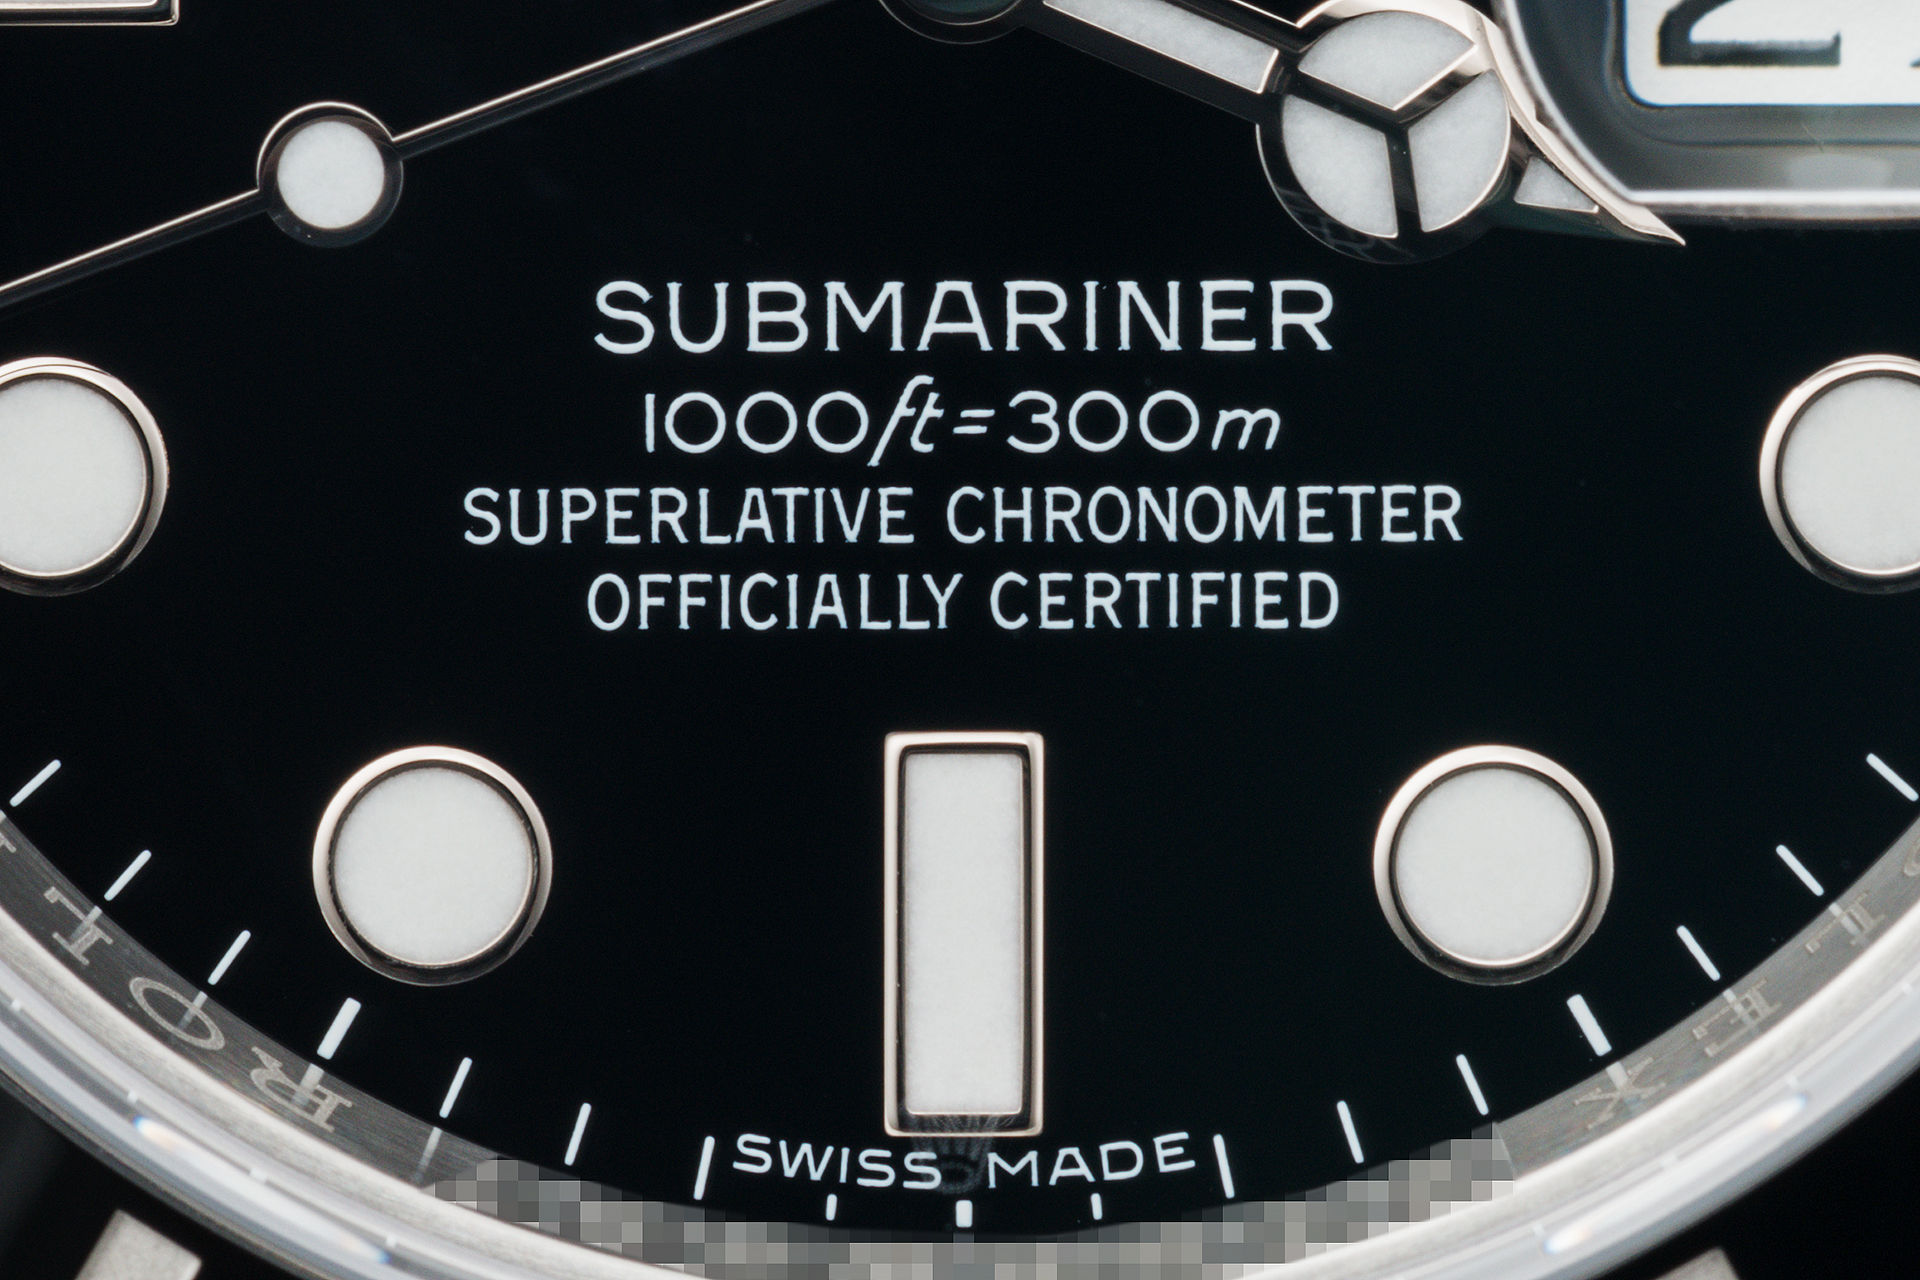 ref 116610LN | Brand New 5 Year Warranty | Rolex Submariner Date